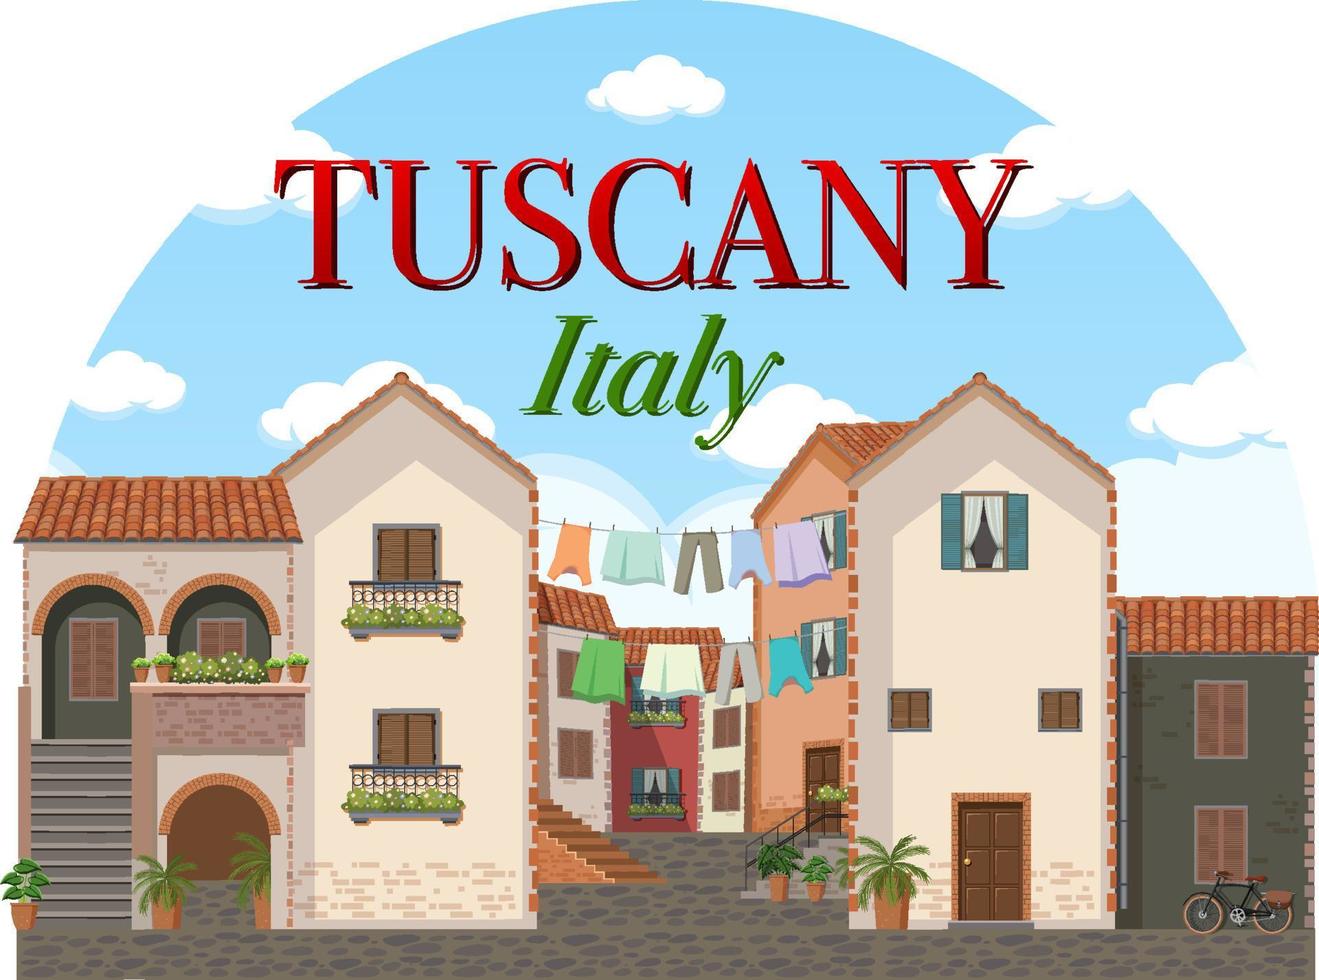 bannière de logo historique de toscane italie vecteur